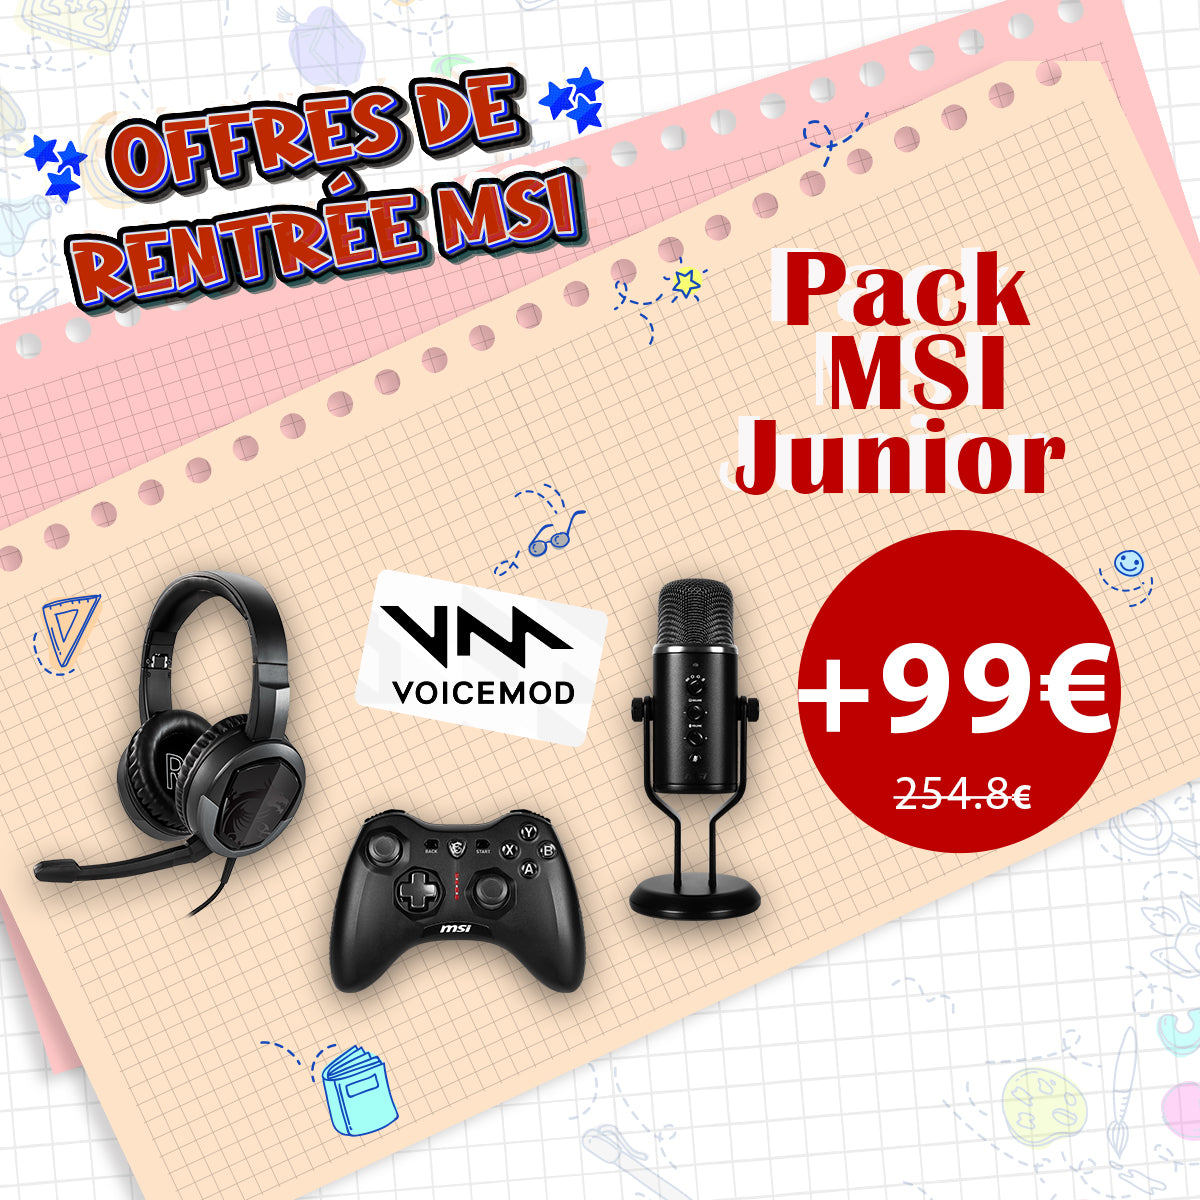 +99€ : Pack MSI Junior